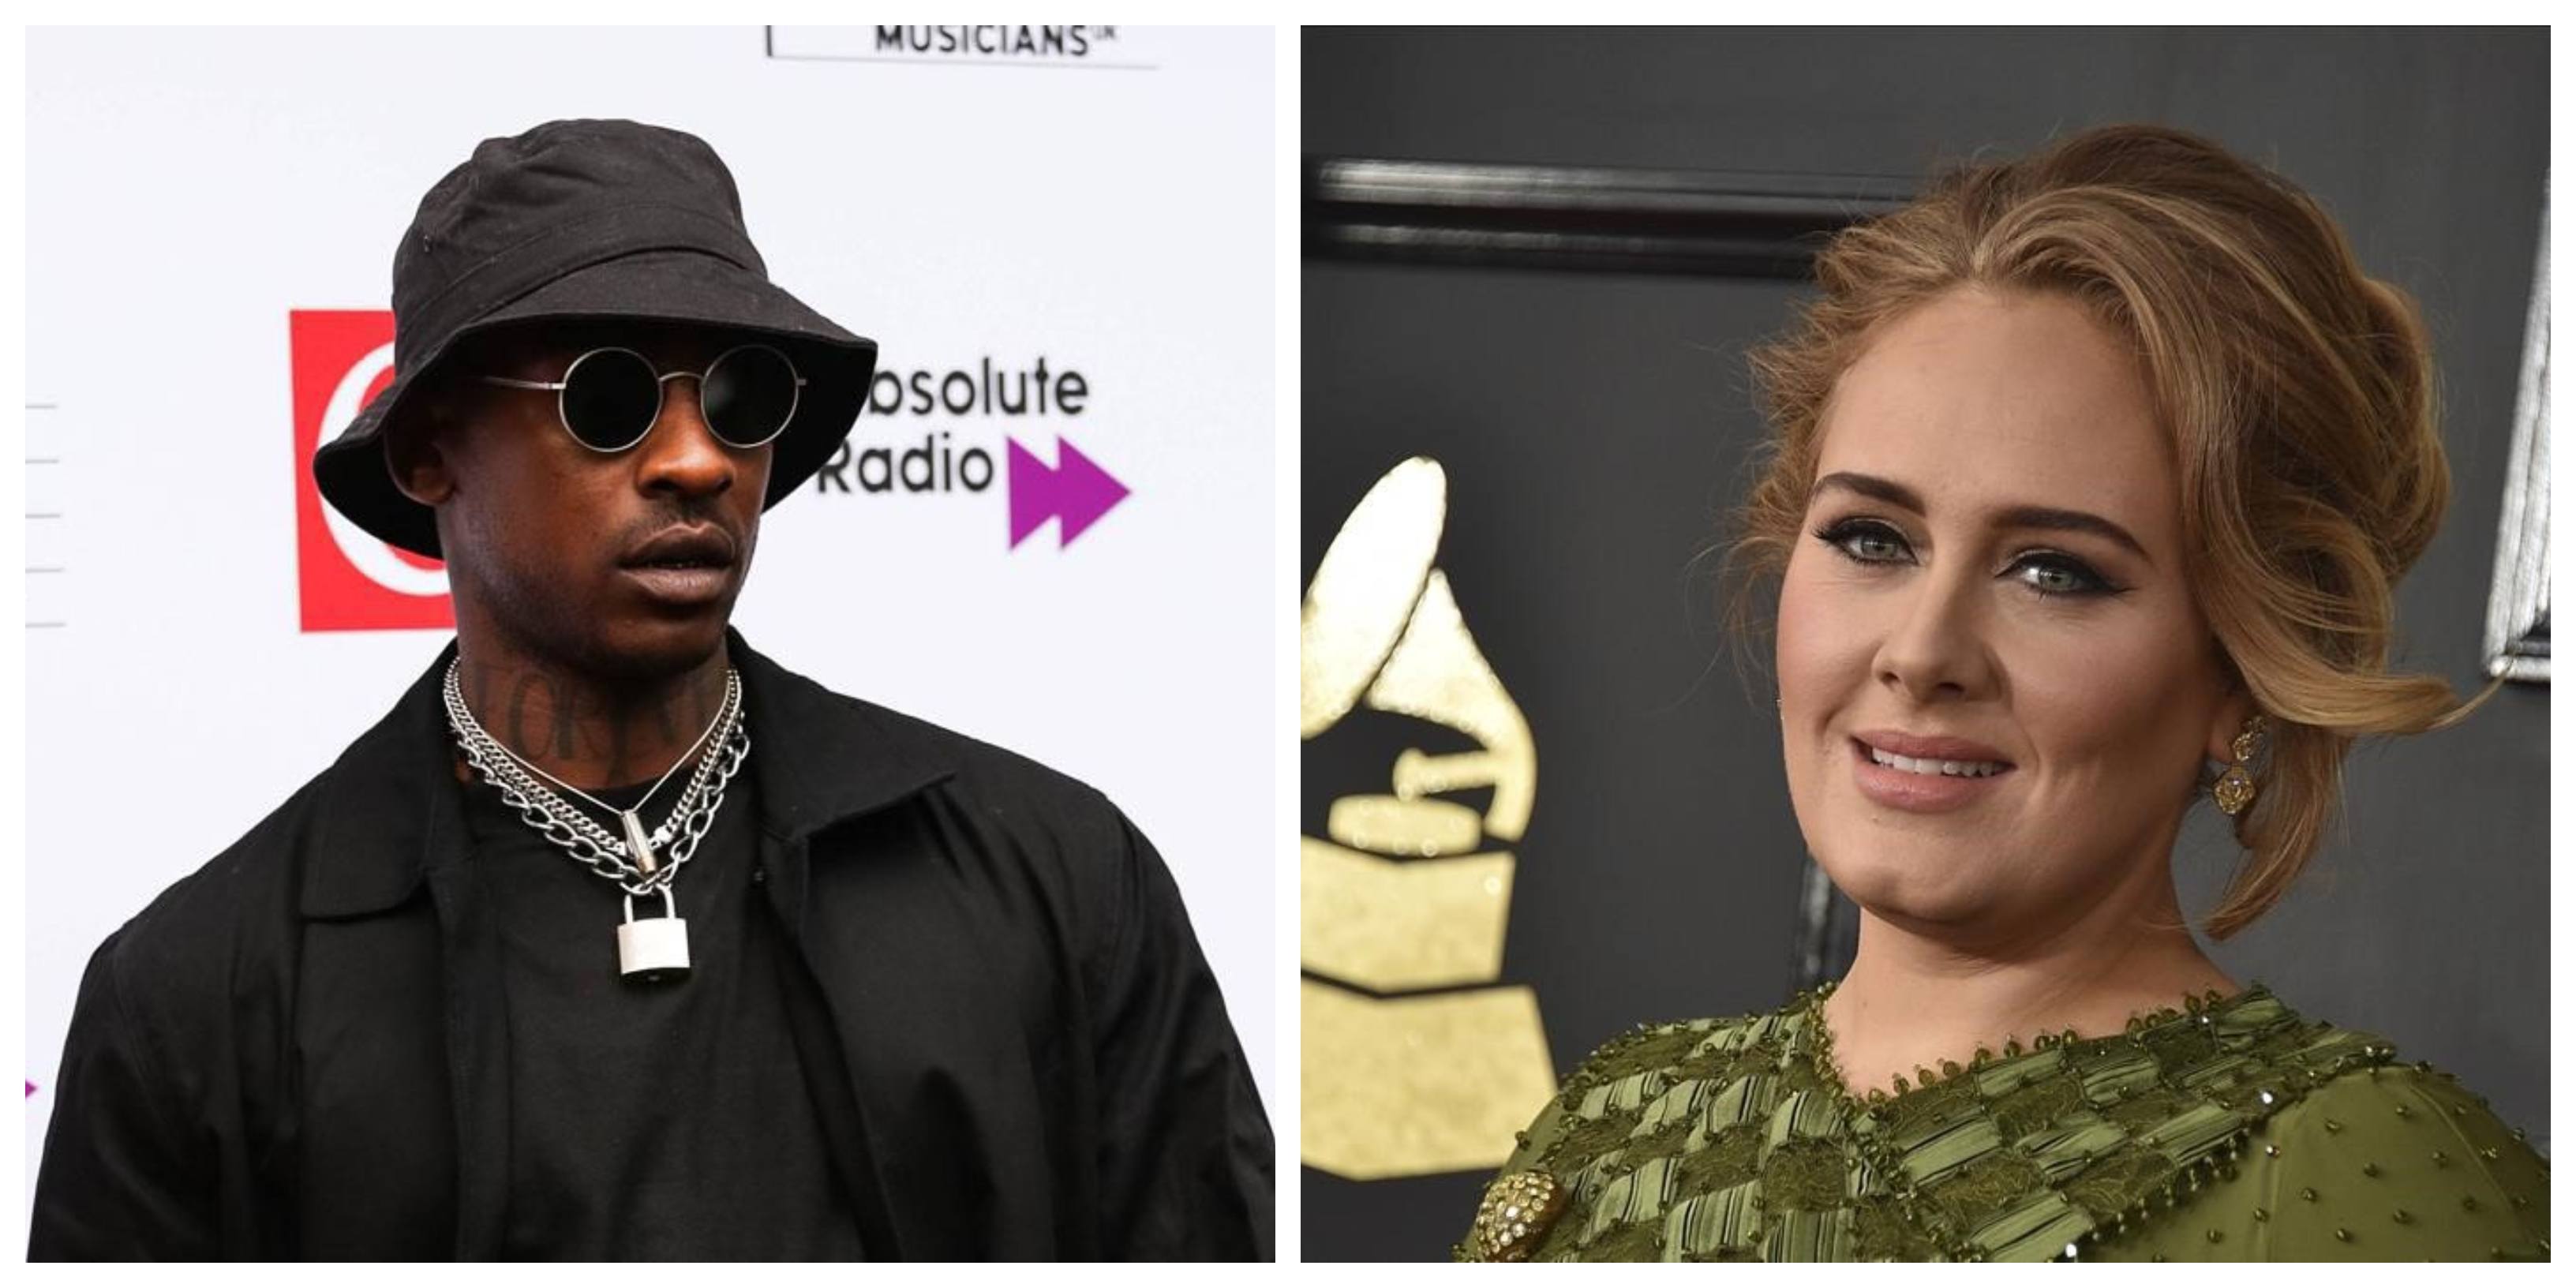 Adele deja atrás su divorcio y podría estar saliendo con el rapero Skepta